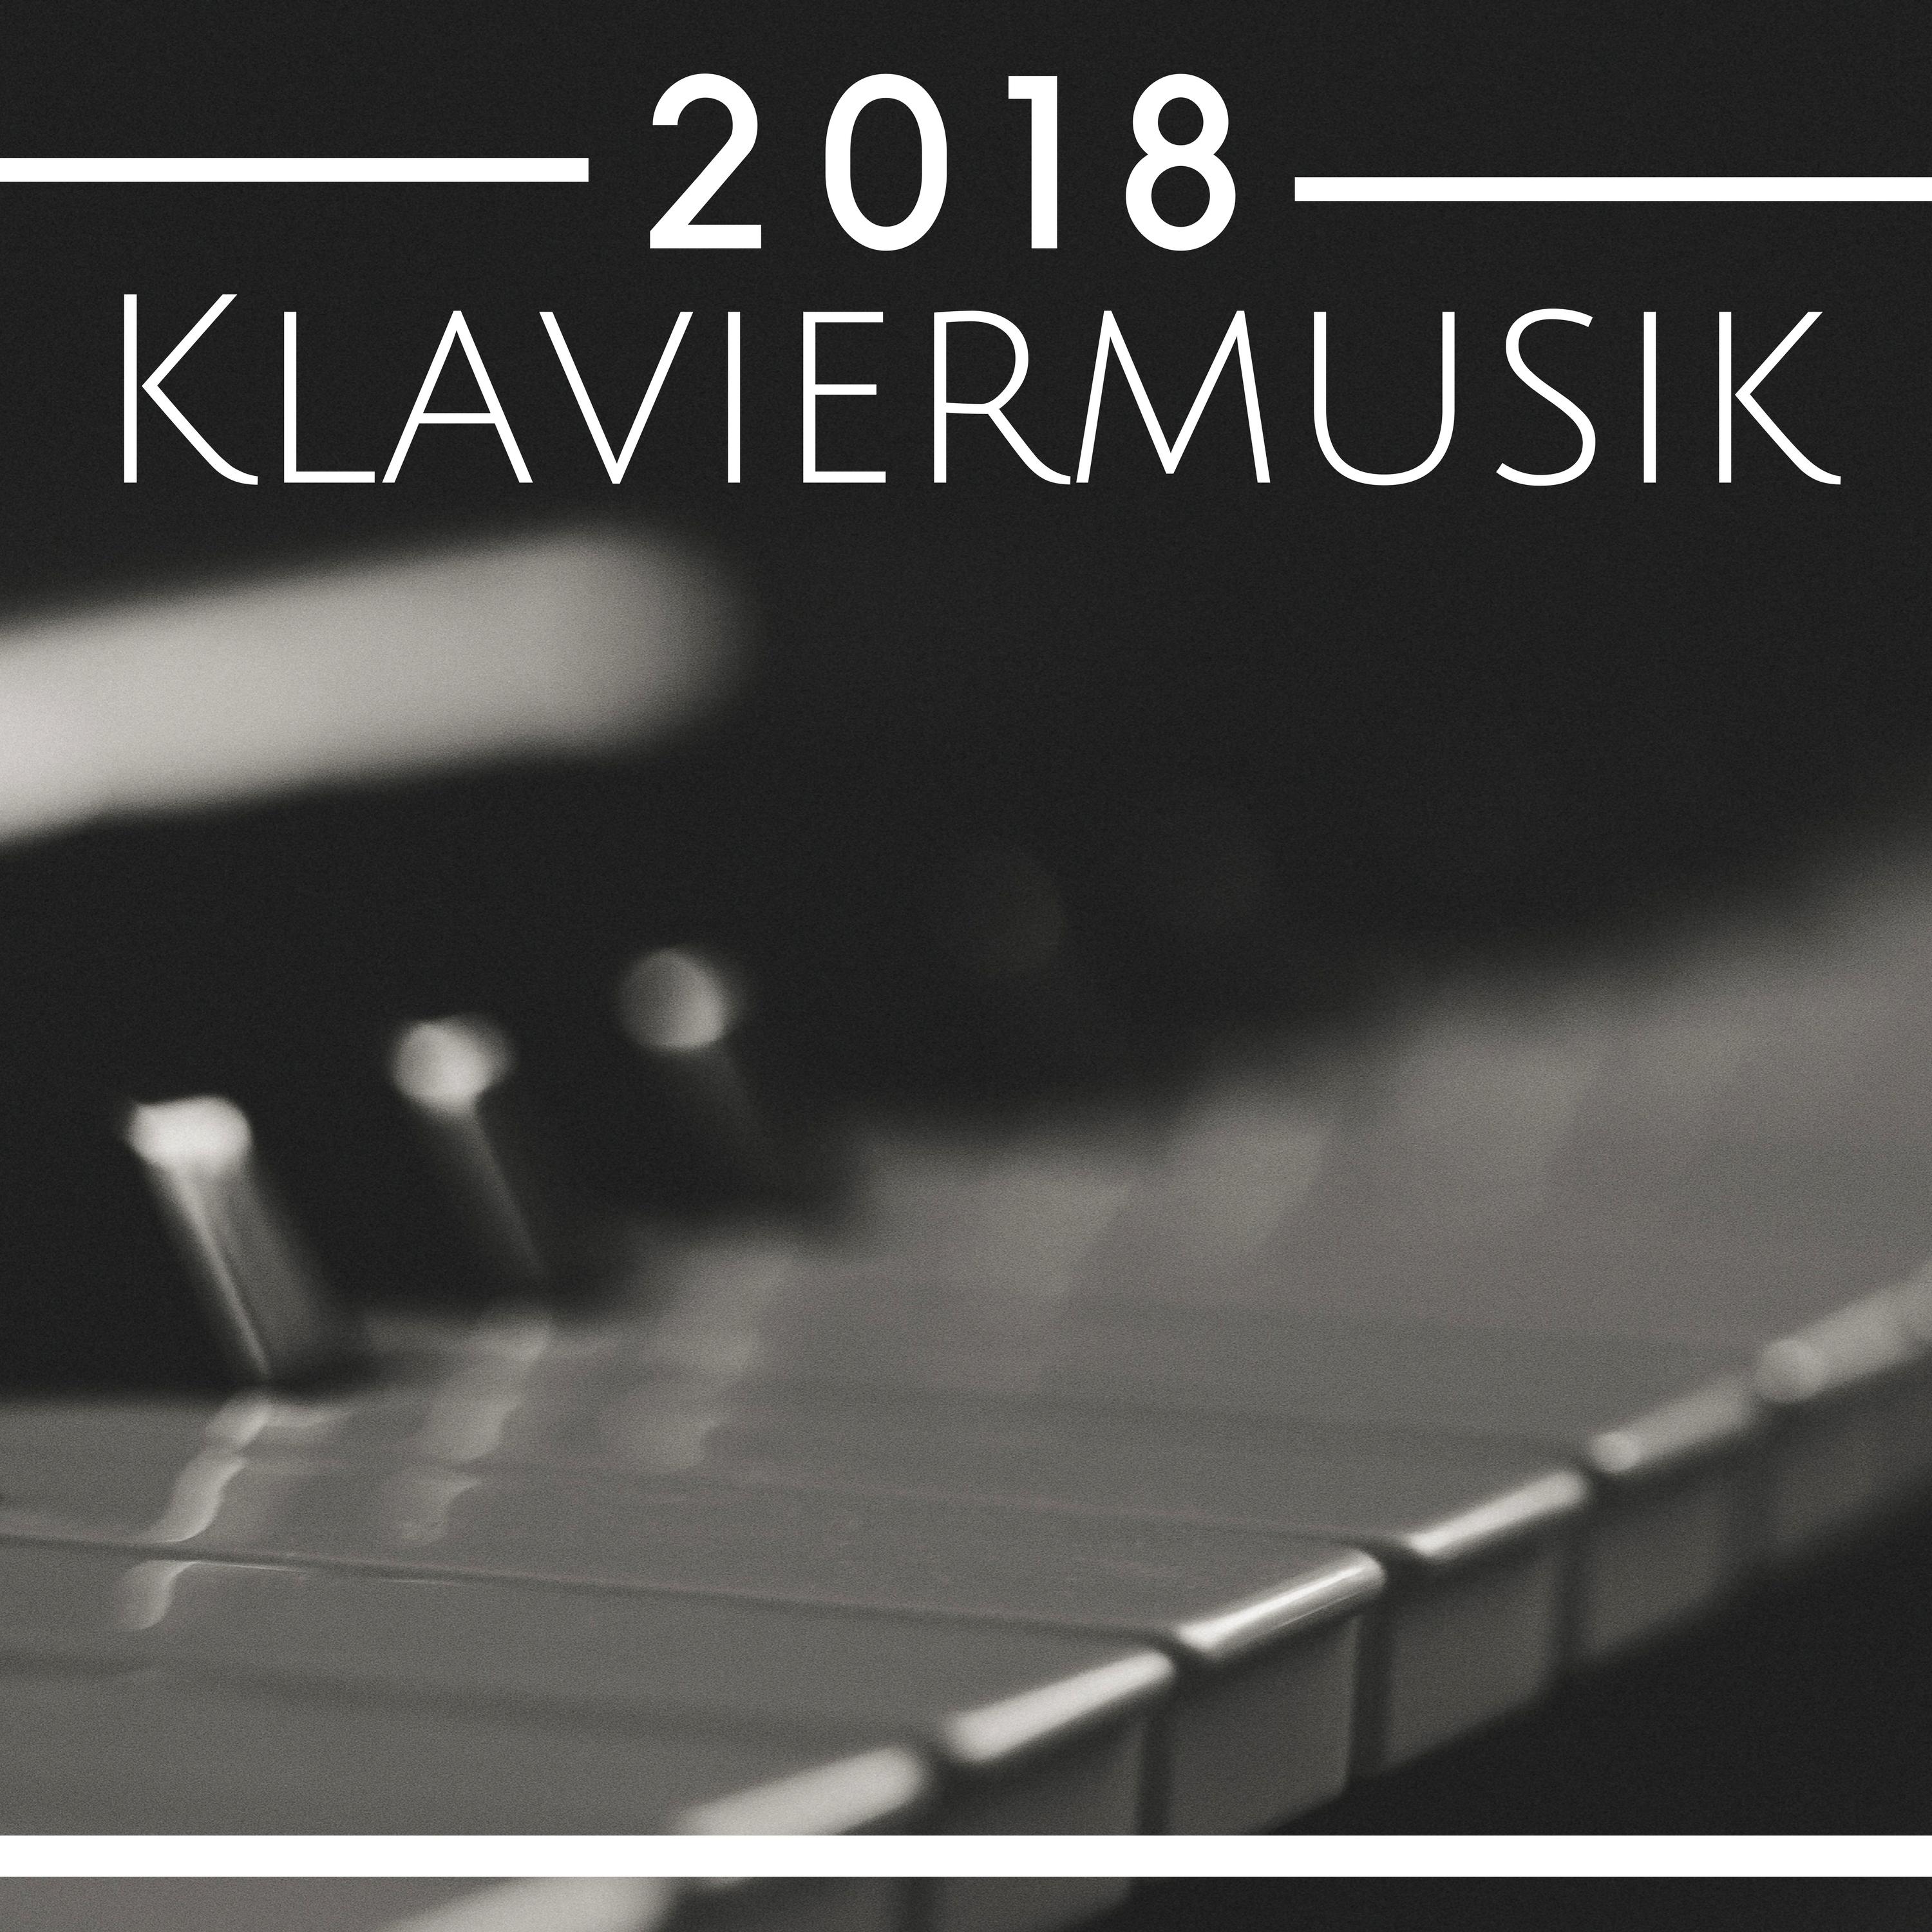 Klaviermusik 2018 - Klassische Lieder Lieder für Meditation, Entspannung, Studium, Konzentration, Fokus - Prime Musik CD Mp3